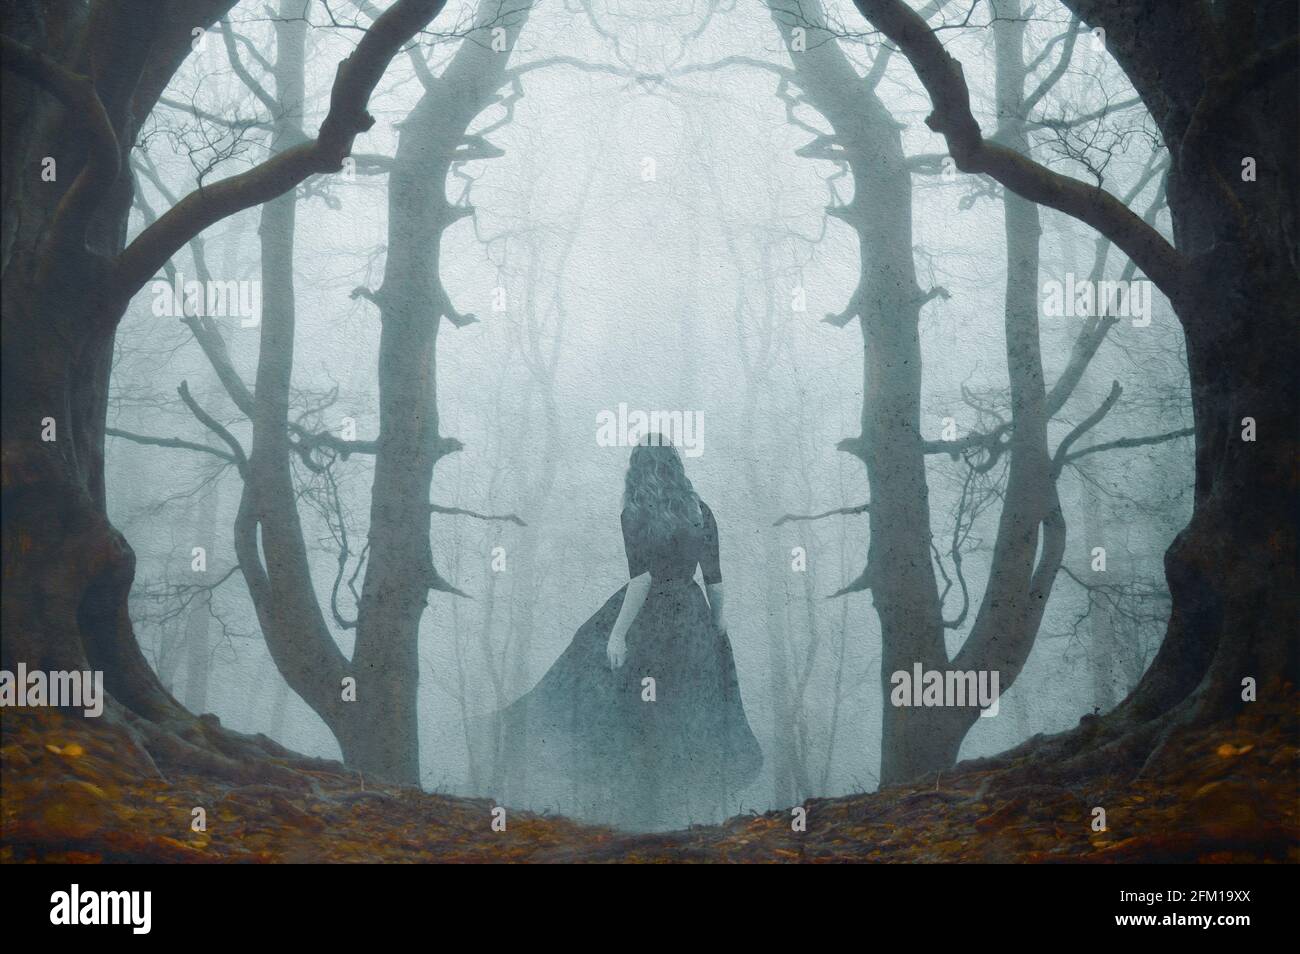 Un concept surnaturel d'une femme fantôme portant une longue robe, marchant dans une forêt effrayante et brumeuse en hiver. Avec un montage grunge et vintage. Banque D'Images